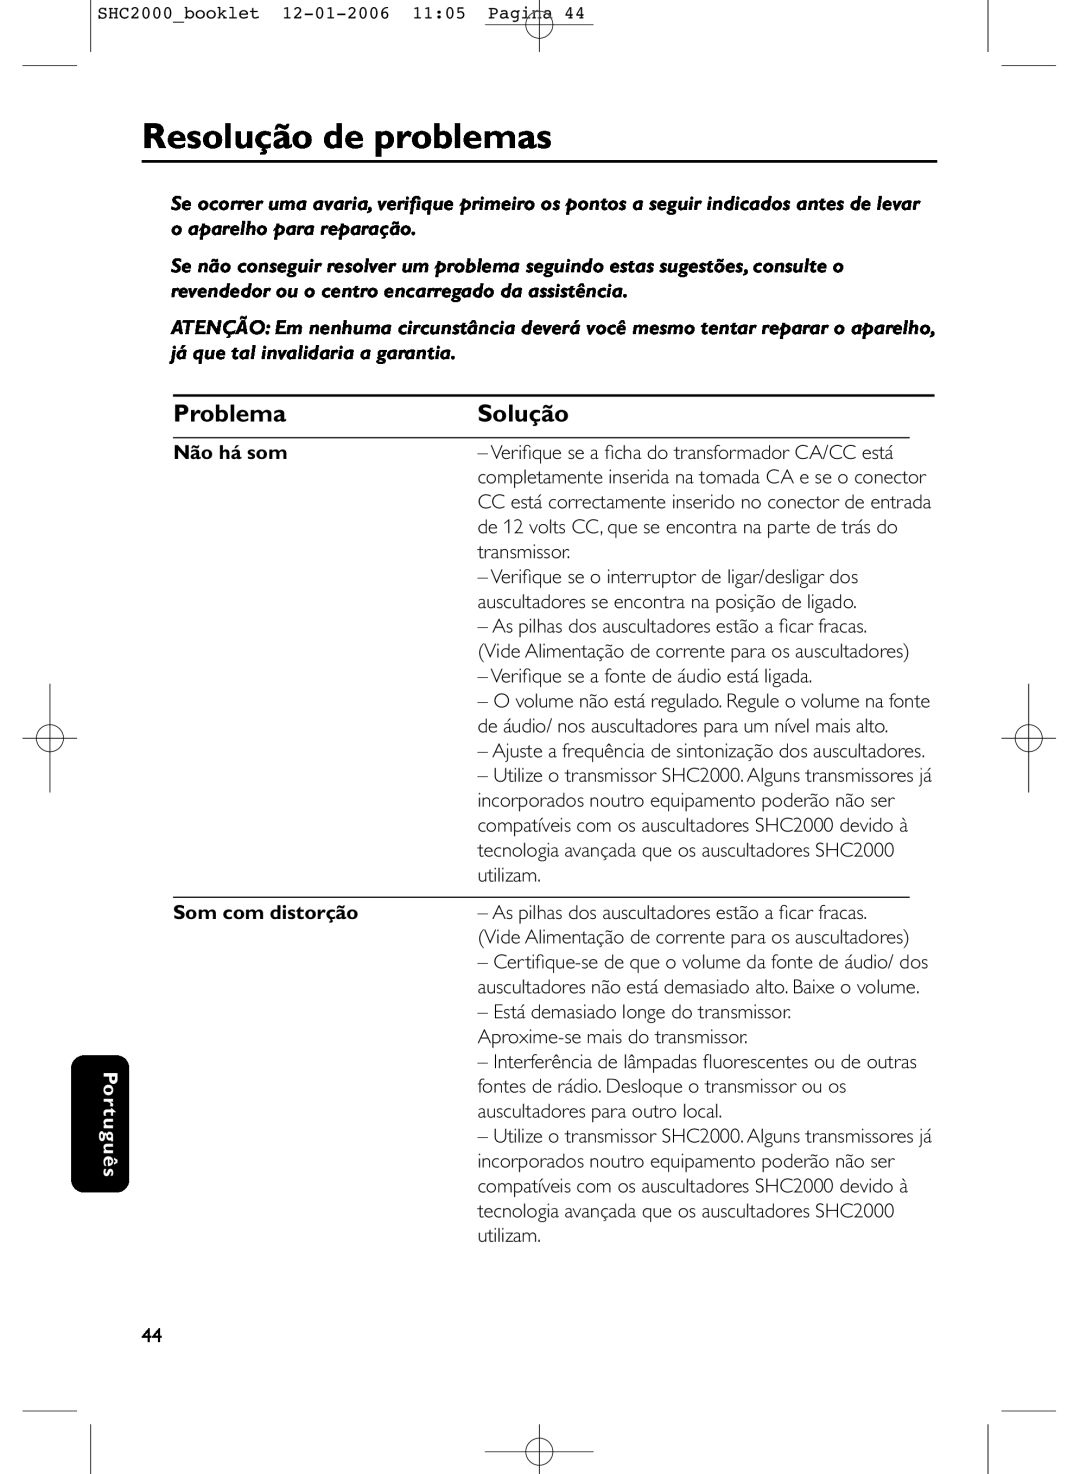 Philips SHC2000 manual Resolução de problemas, Solução, Problema, Português, Não há som, Som com distorção 